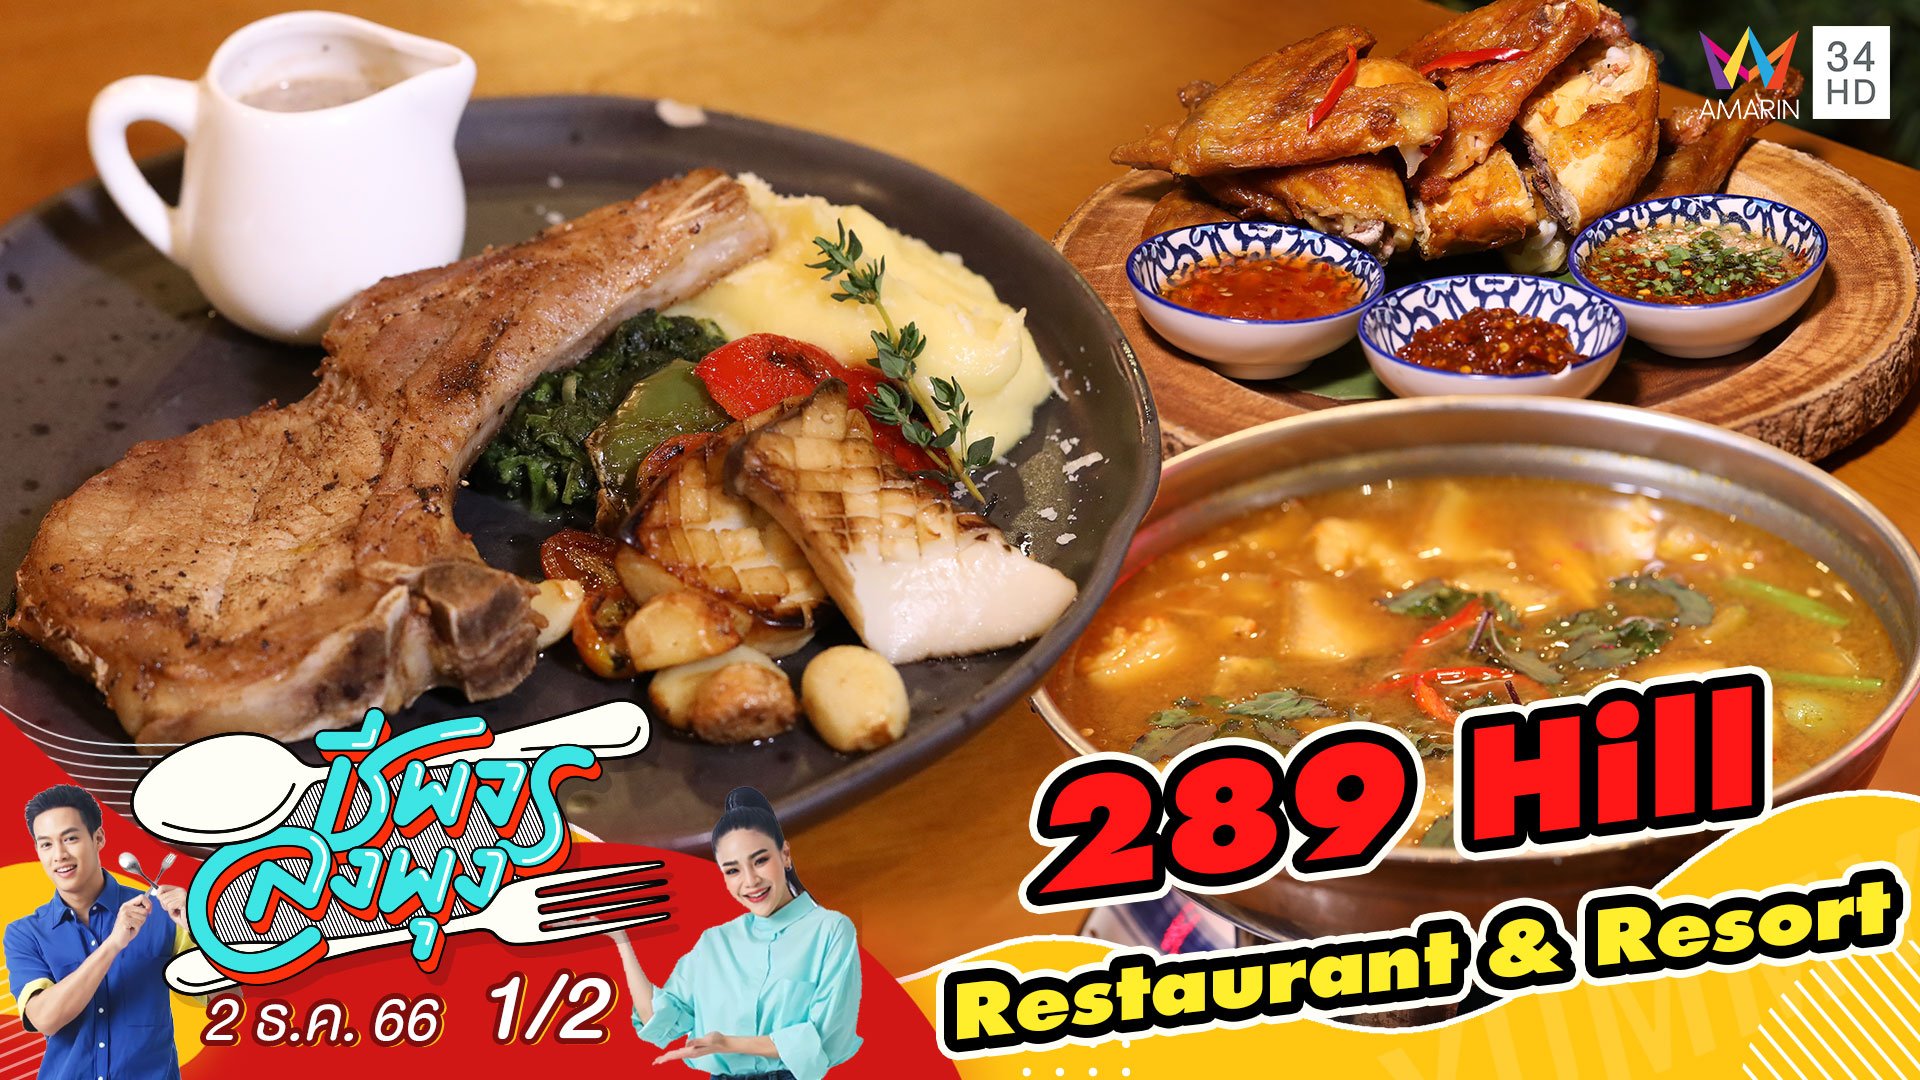 ร้าน 289 Hill Restaurant & Resort ร้านอาหารและคาเฟ่สุดชิล | ชีพจรลงพุง | 2 ธ.ค. 66 (2/2) | AMARIN TVHD34